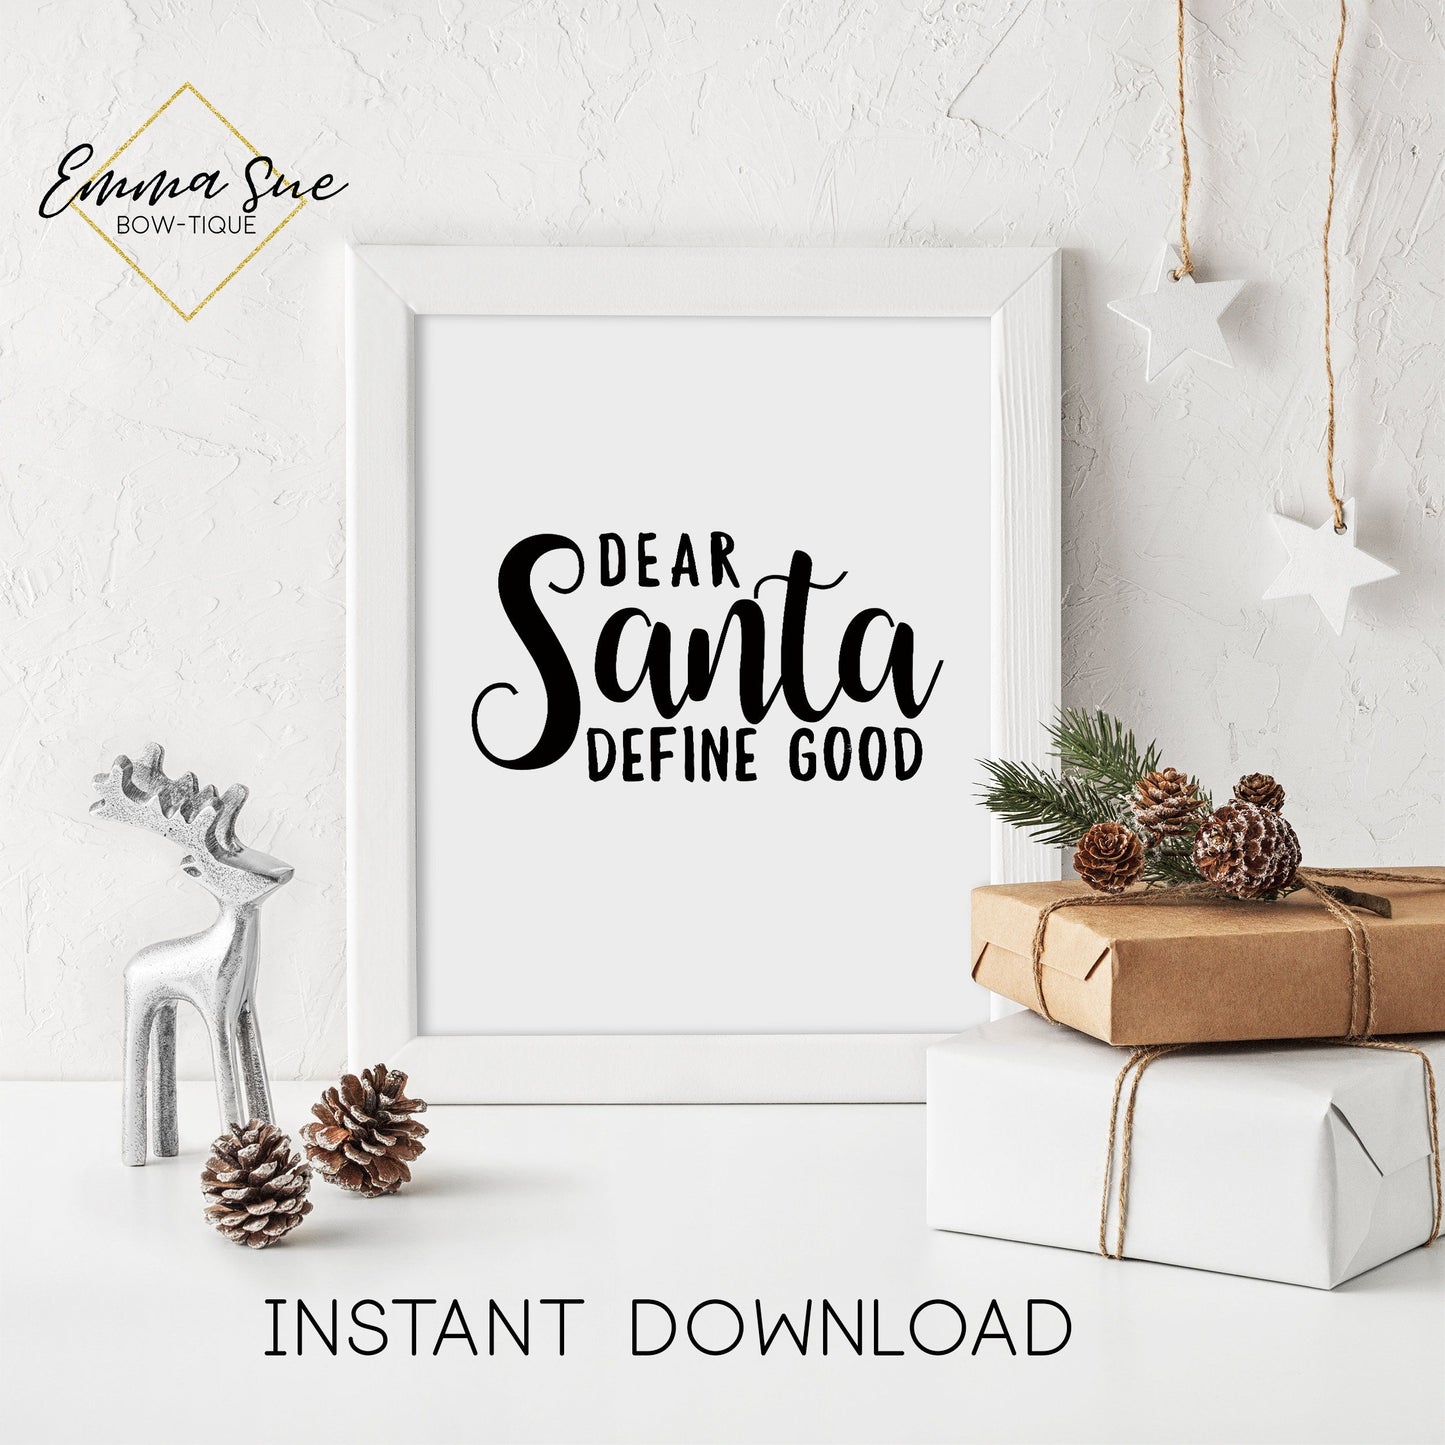 Dear Santa, Define Good - Christmas Decor Printable Sign Farmhouse Style  - Digital File